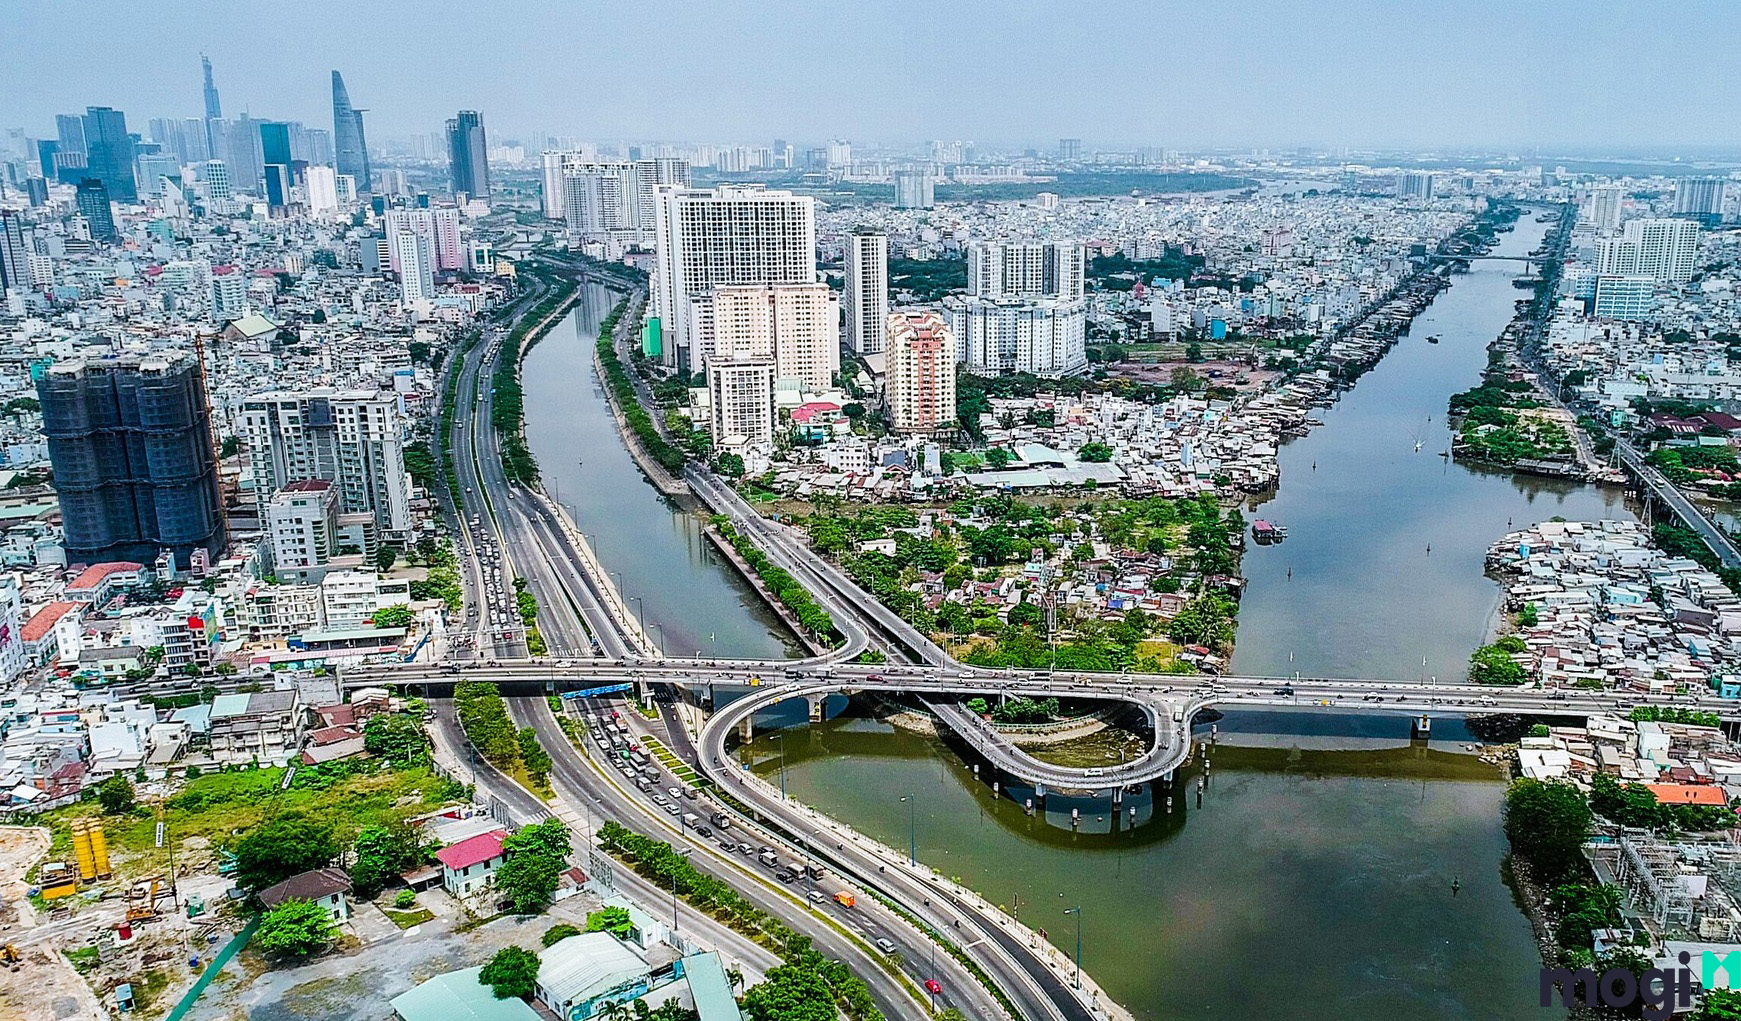 Quy hoạch phát triển giao thông vận tải của Thành phố Hồ Chí Minh đã bộc lộ nhiều bất cập, thực hiện chậm, chưa đồng bộ